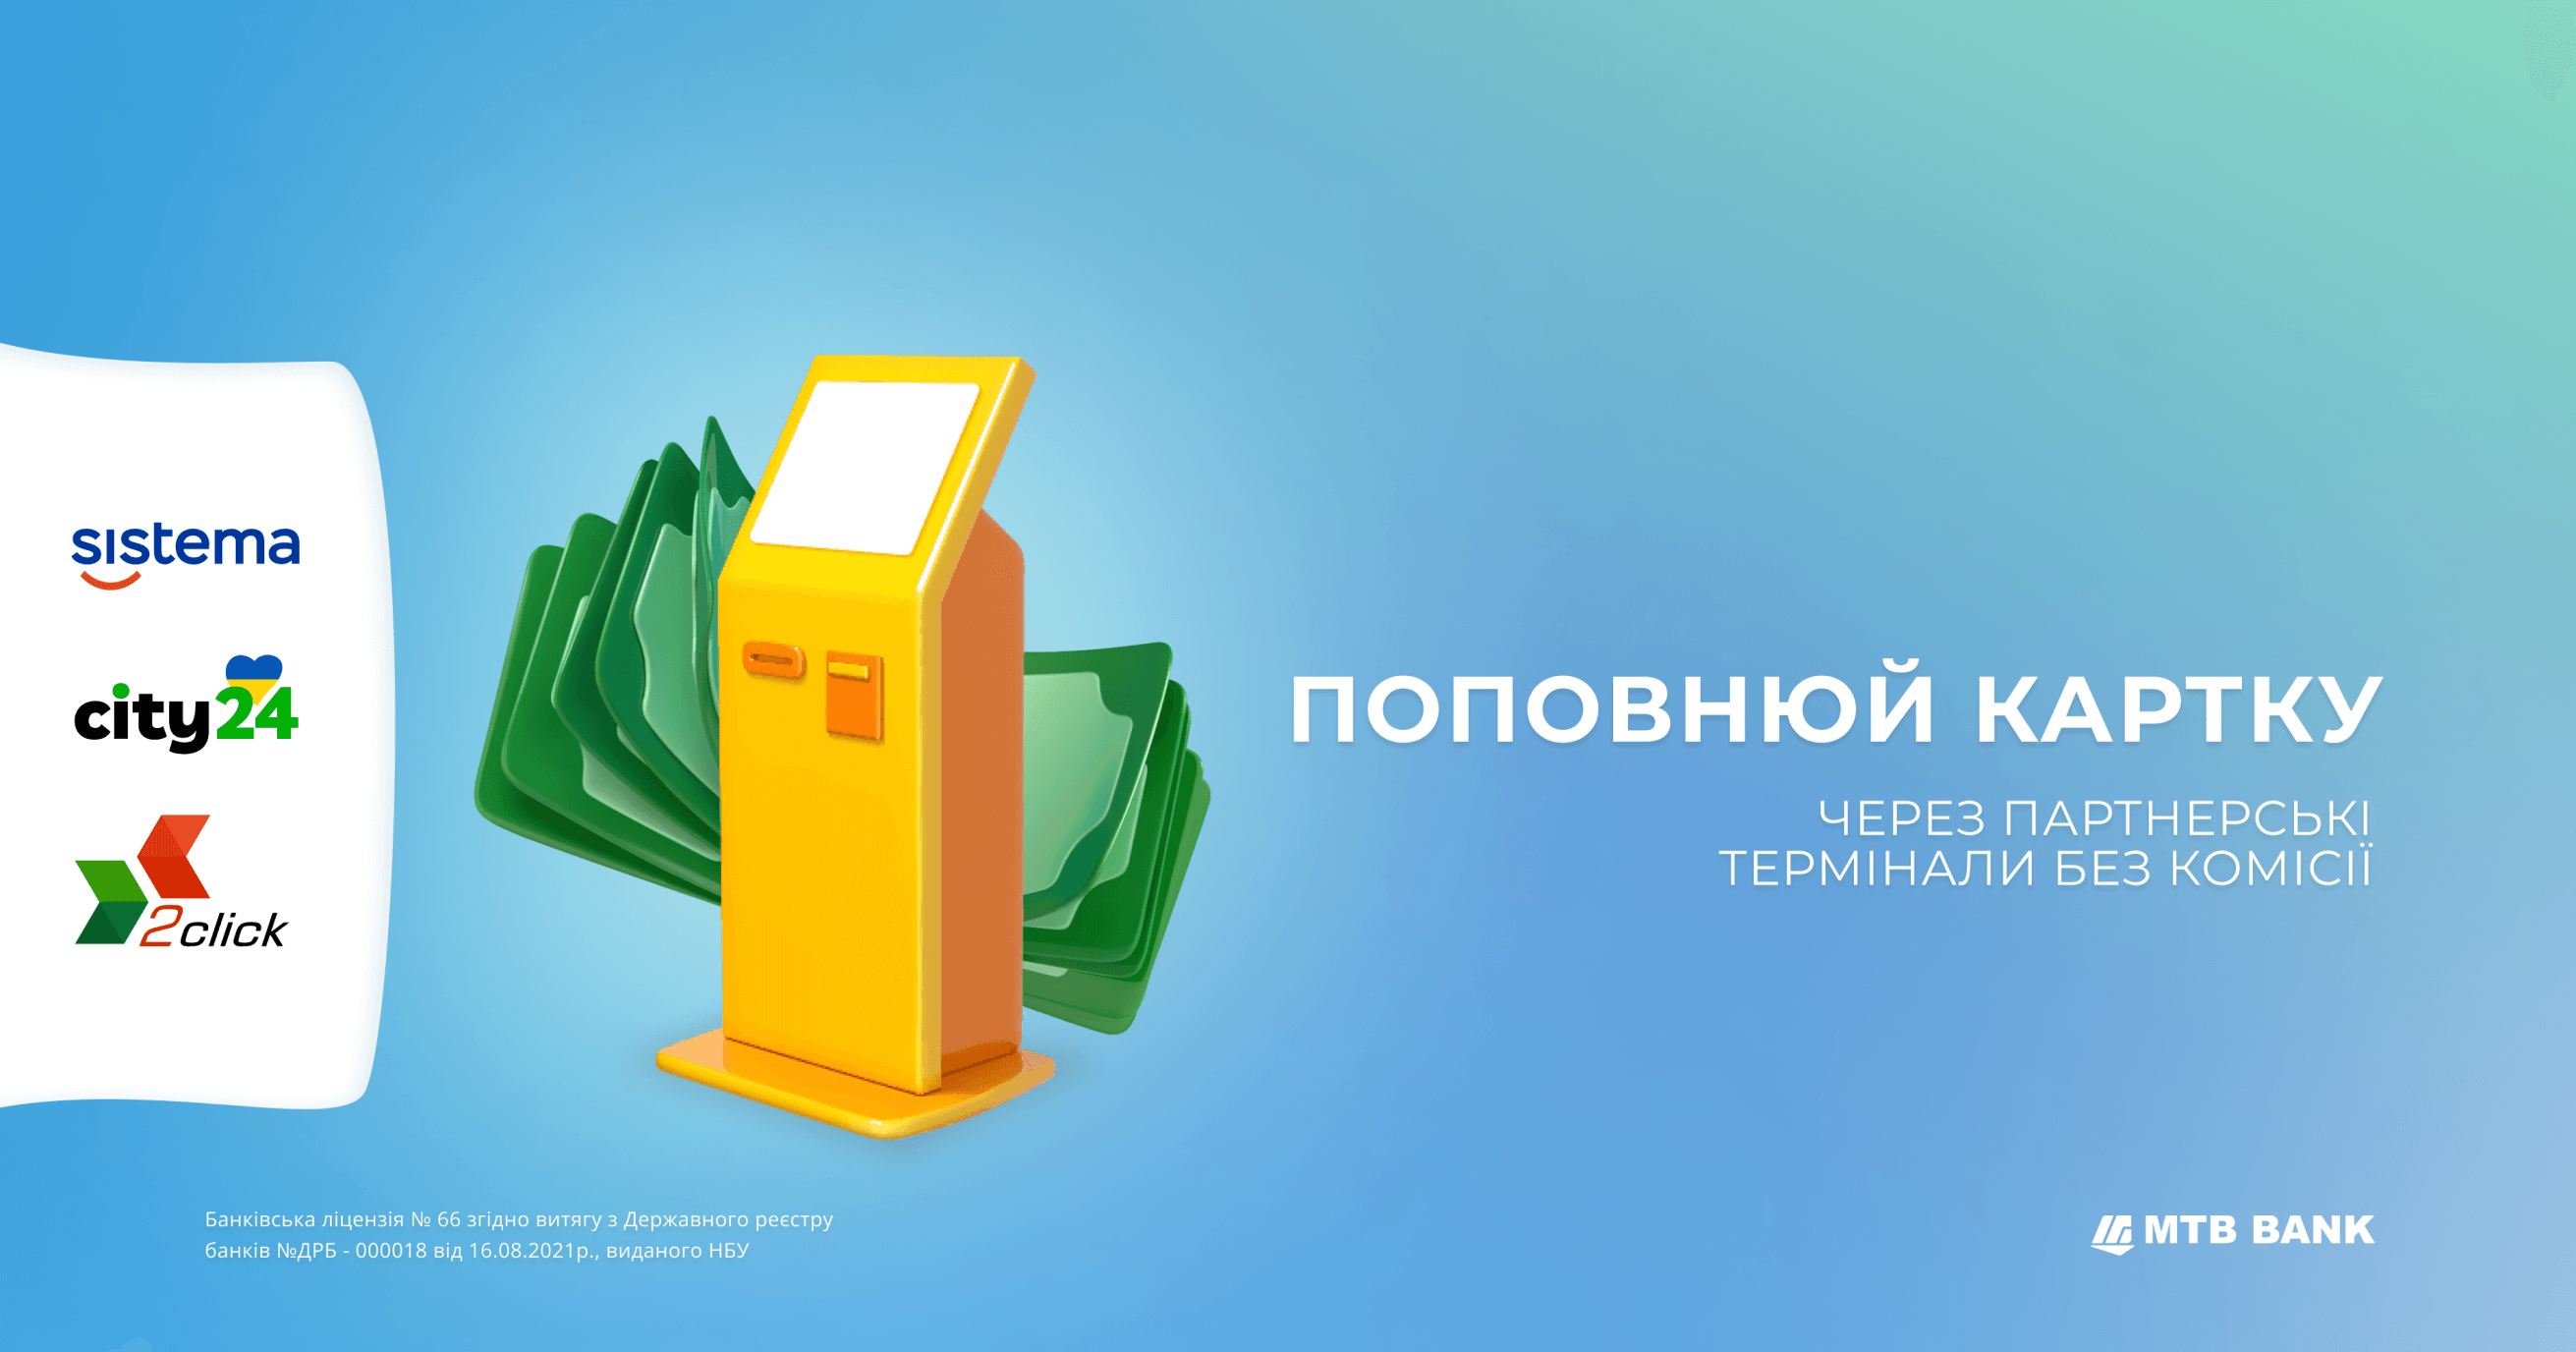 Поповнюйте картки від МТБ БАНК в термінальній мережі партнерів - фото - mtb.ua